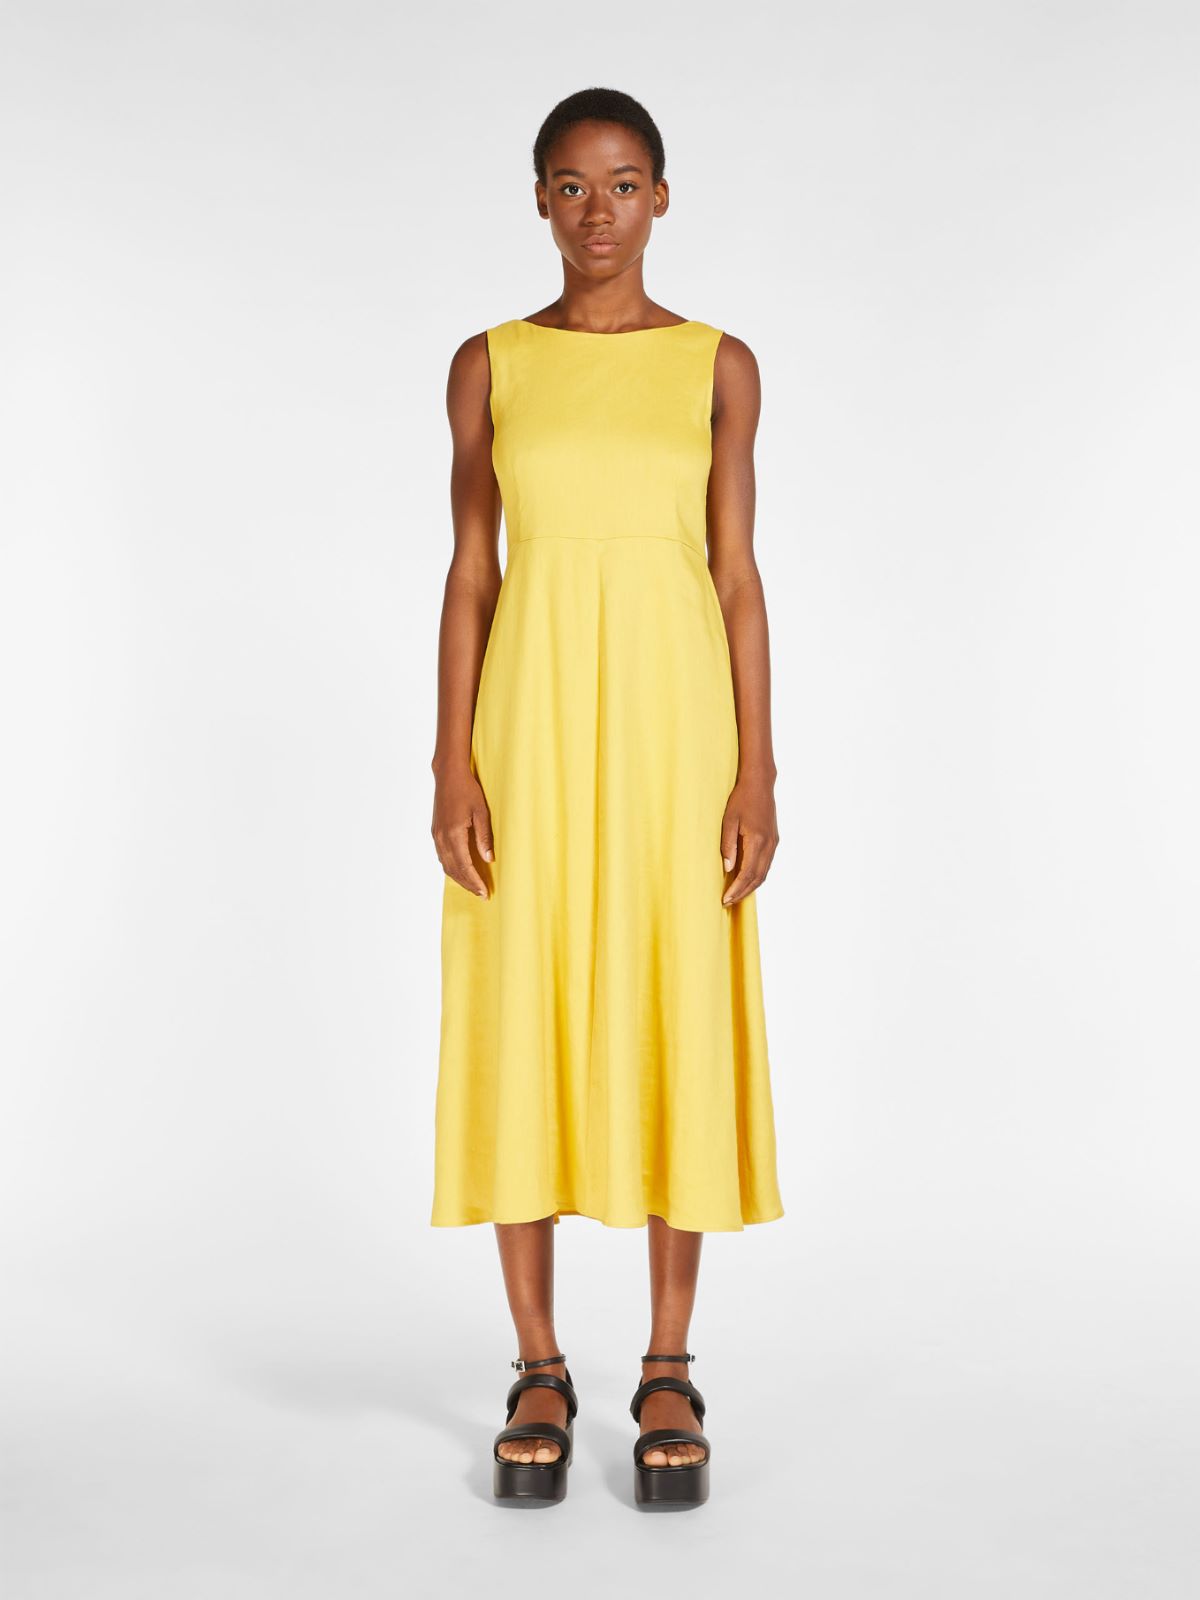 Linen and viscose dress, bright yellow | Weekend Max Mara